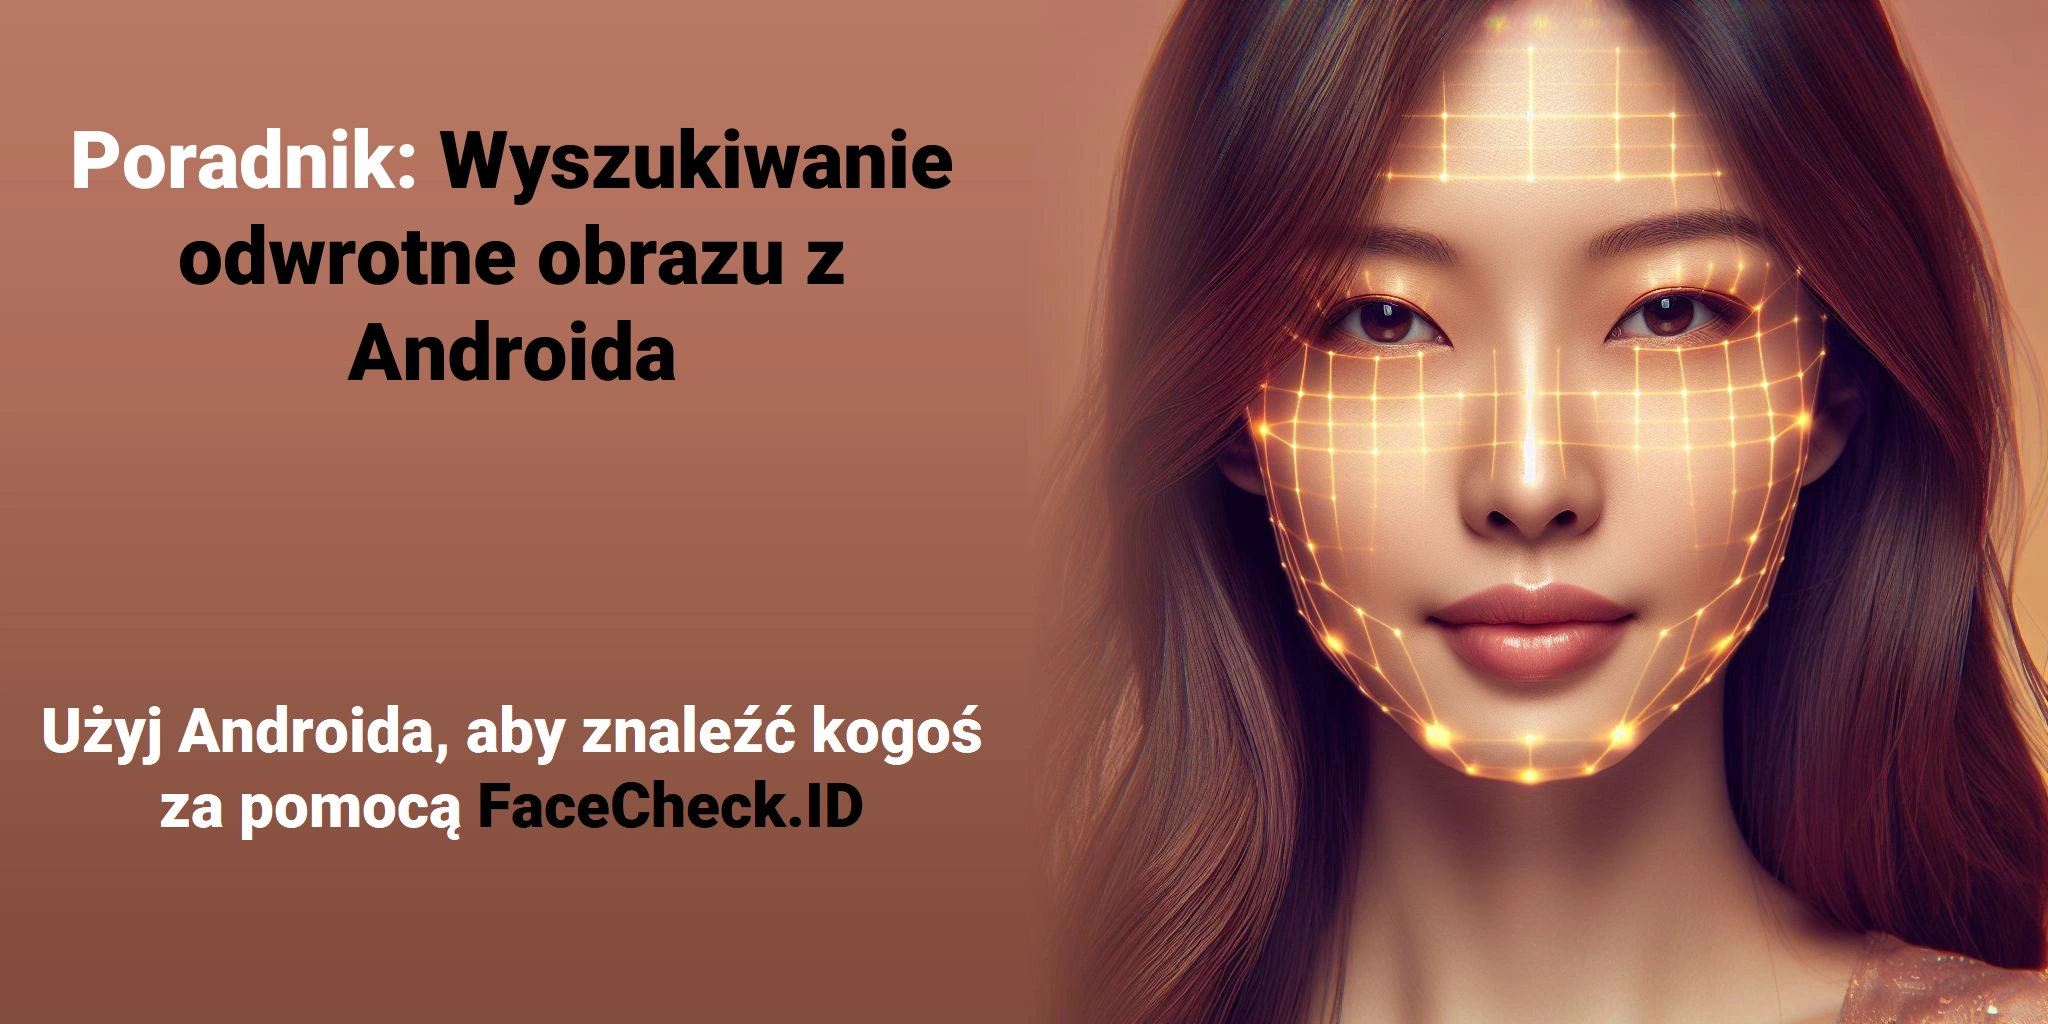 Poradnik: Wyszukiwanie odwrotne obrazu z Androida Użyj Androida, aby znaleźć kogoś za pomocą FaceCheck.ID